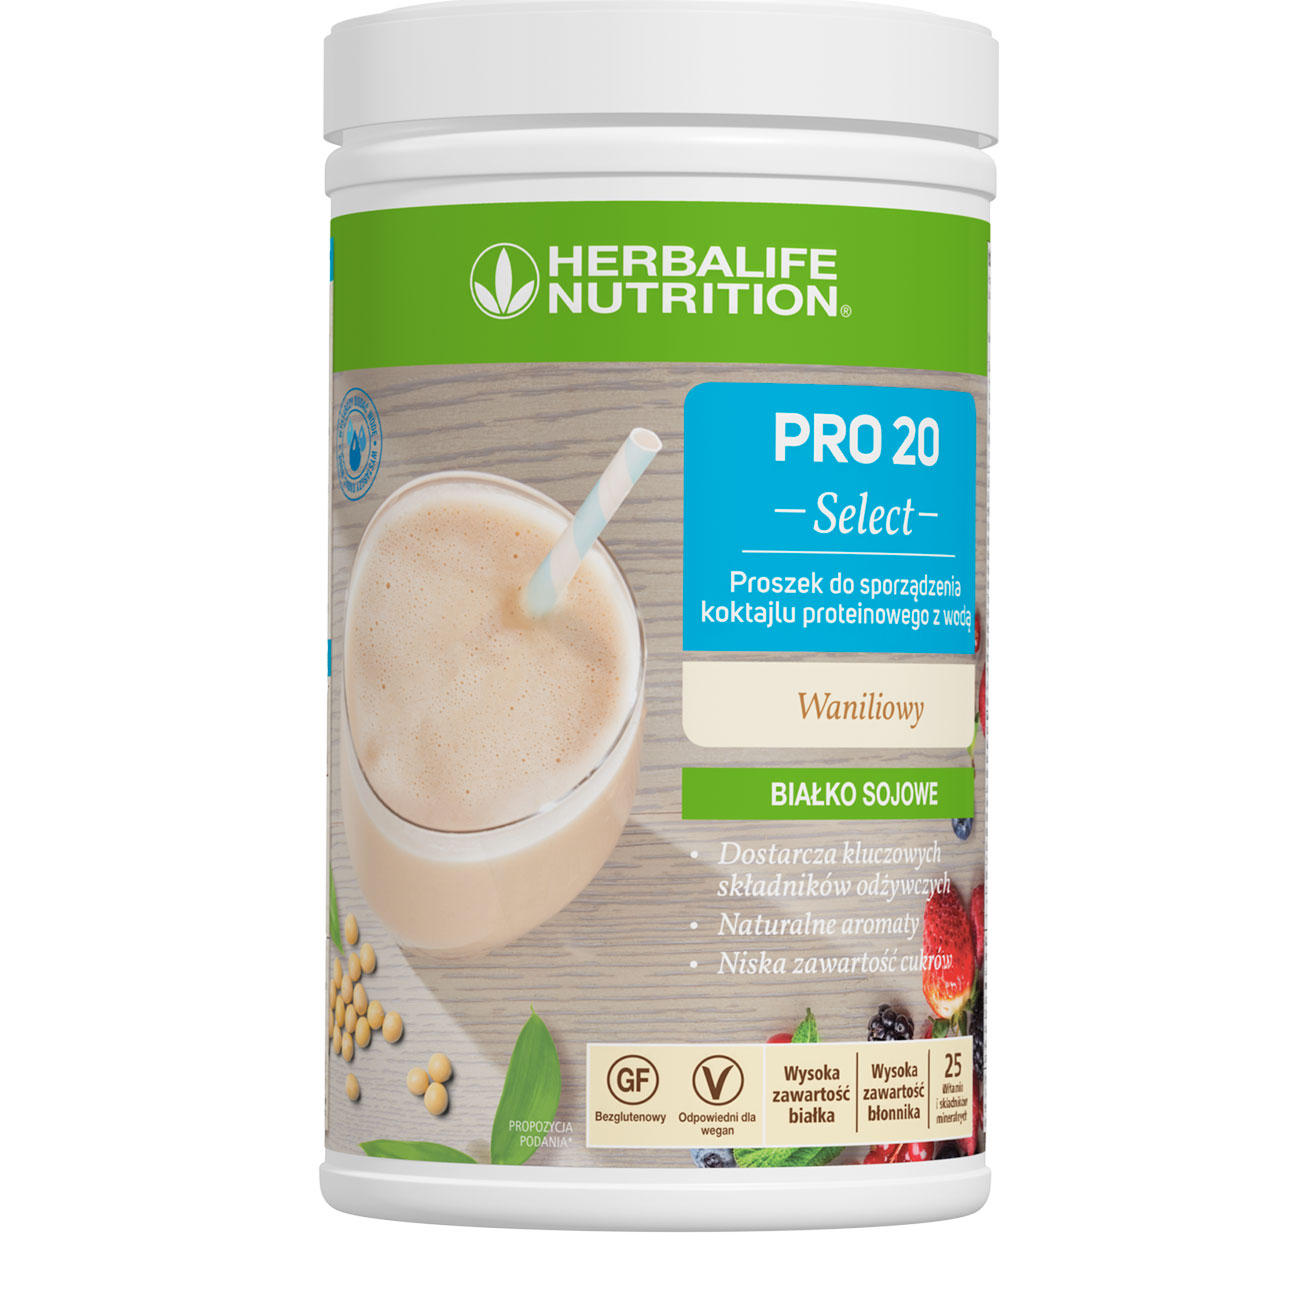 PRO 20 Select Produkt proteinowy o smaku waniliowym product shot